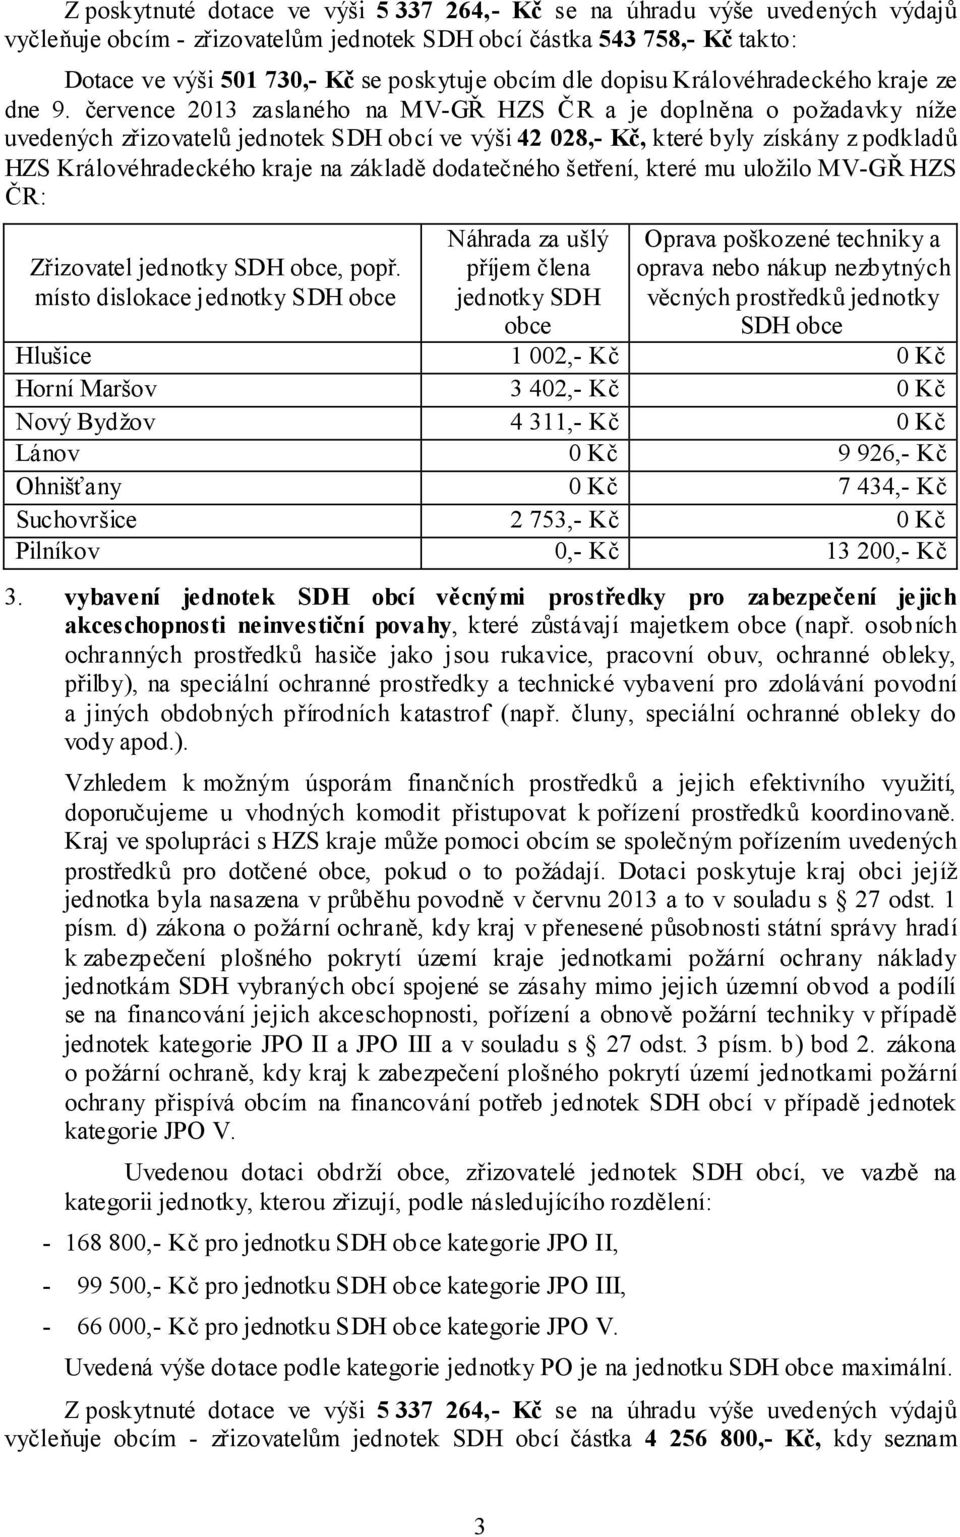 července 2013 zaslaného na MV-GŘ HZS ČR a je doplněna o požadavky níže uvedených zřizovatelů jednotek SDH obcí ve výši 42 028,- Kč, které byly získány z podkladů HZS Královéhradeckého kraje na